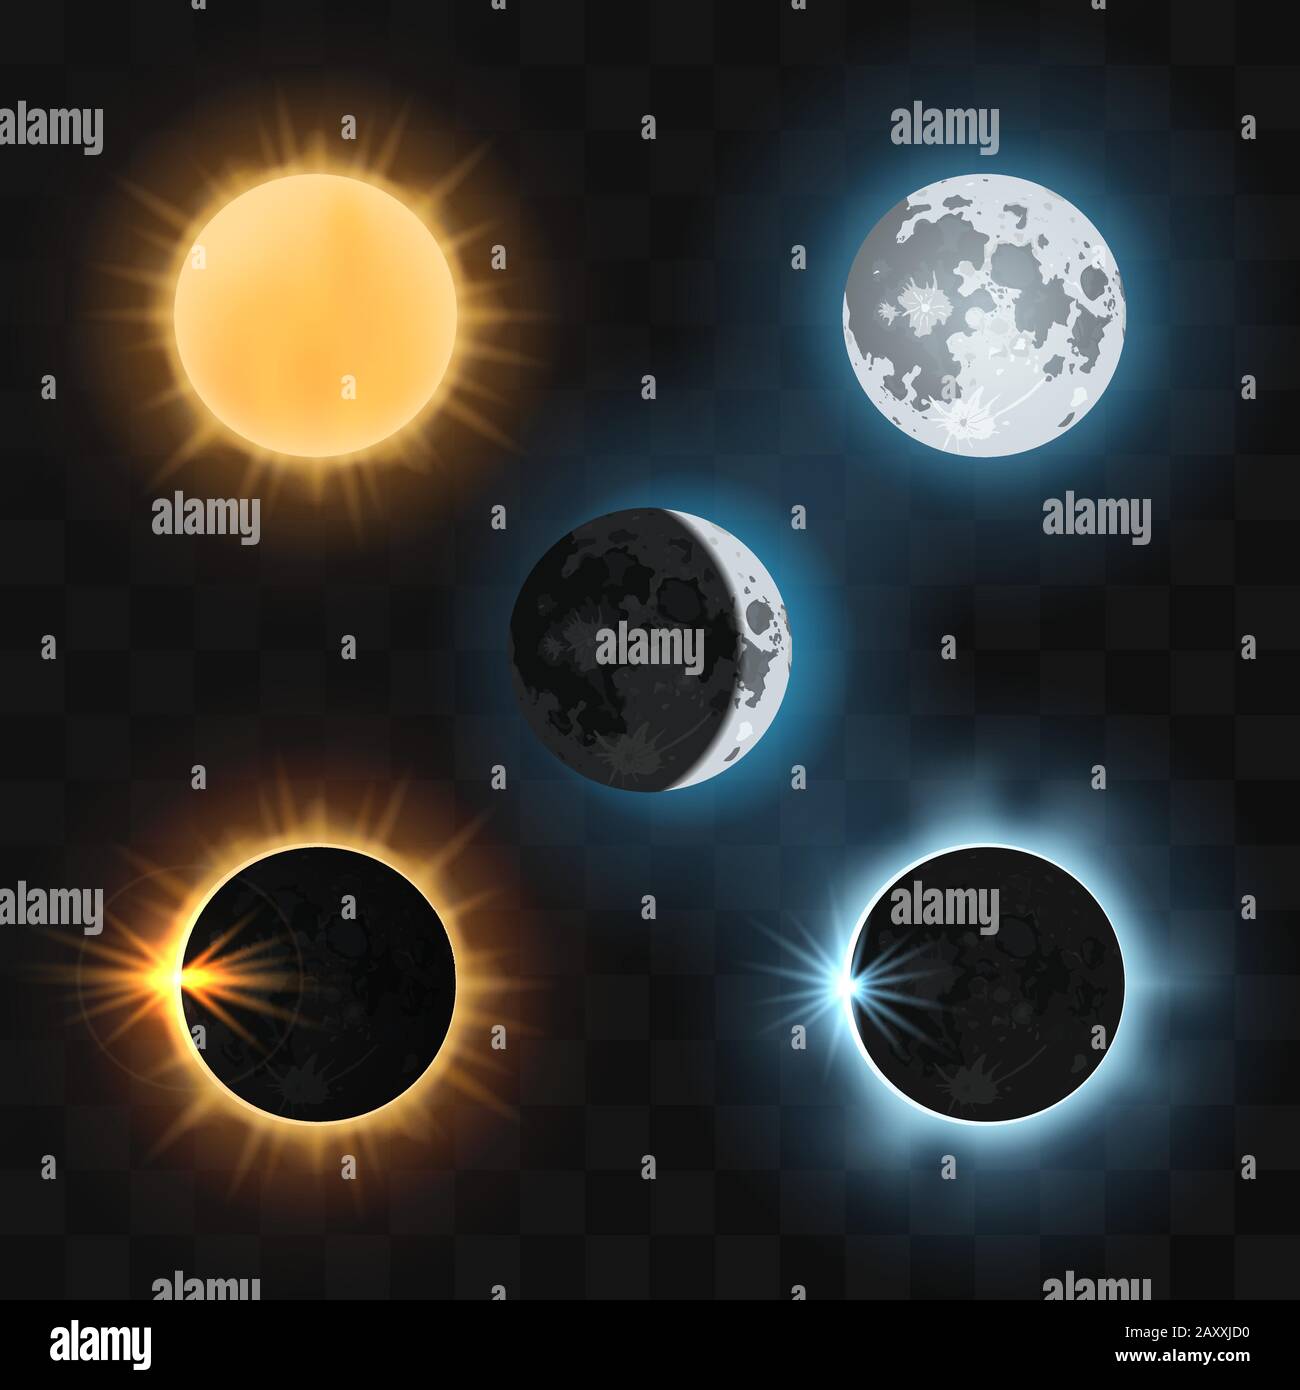 Sonne und Mond sowie Sonne und Mond werden in den Schatten gestellt. Sonnenfinsternis, Mondfinsternis, dunkle Sonnenfinsternis oder Mond, Naturfinsternis Sonne und Mond. Vektorgrafiken Stock Vektor